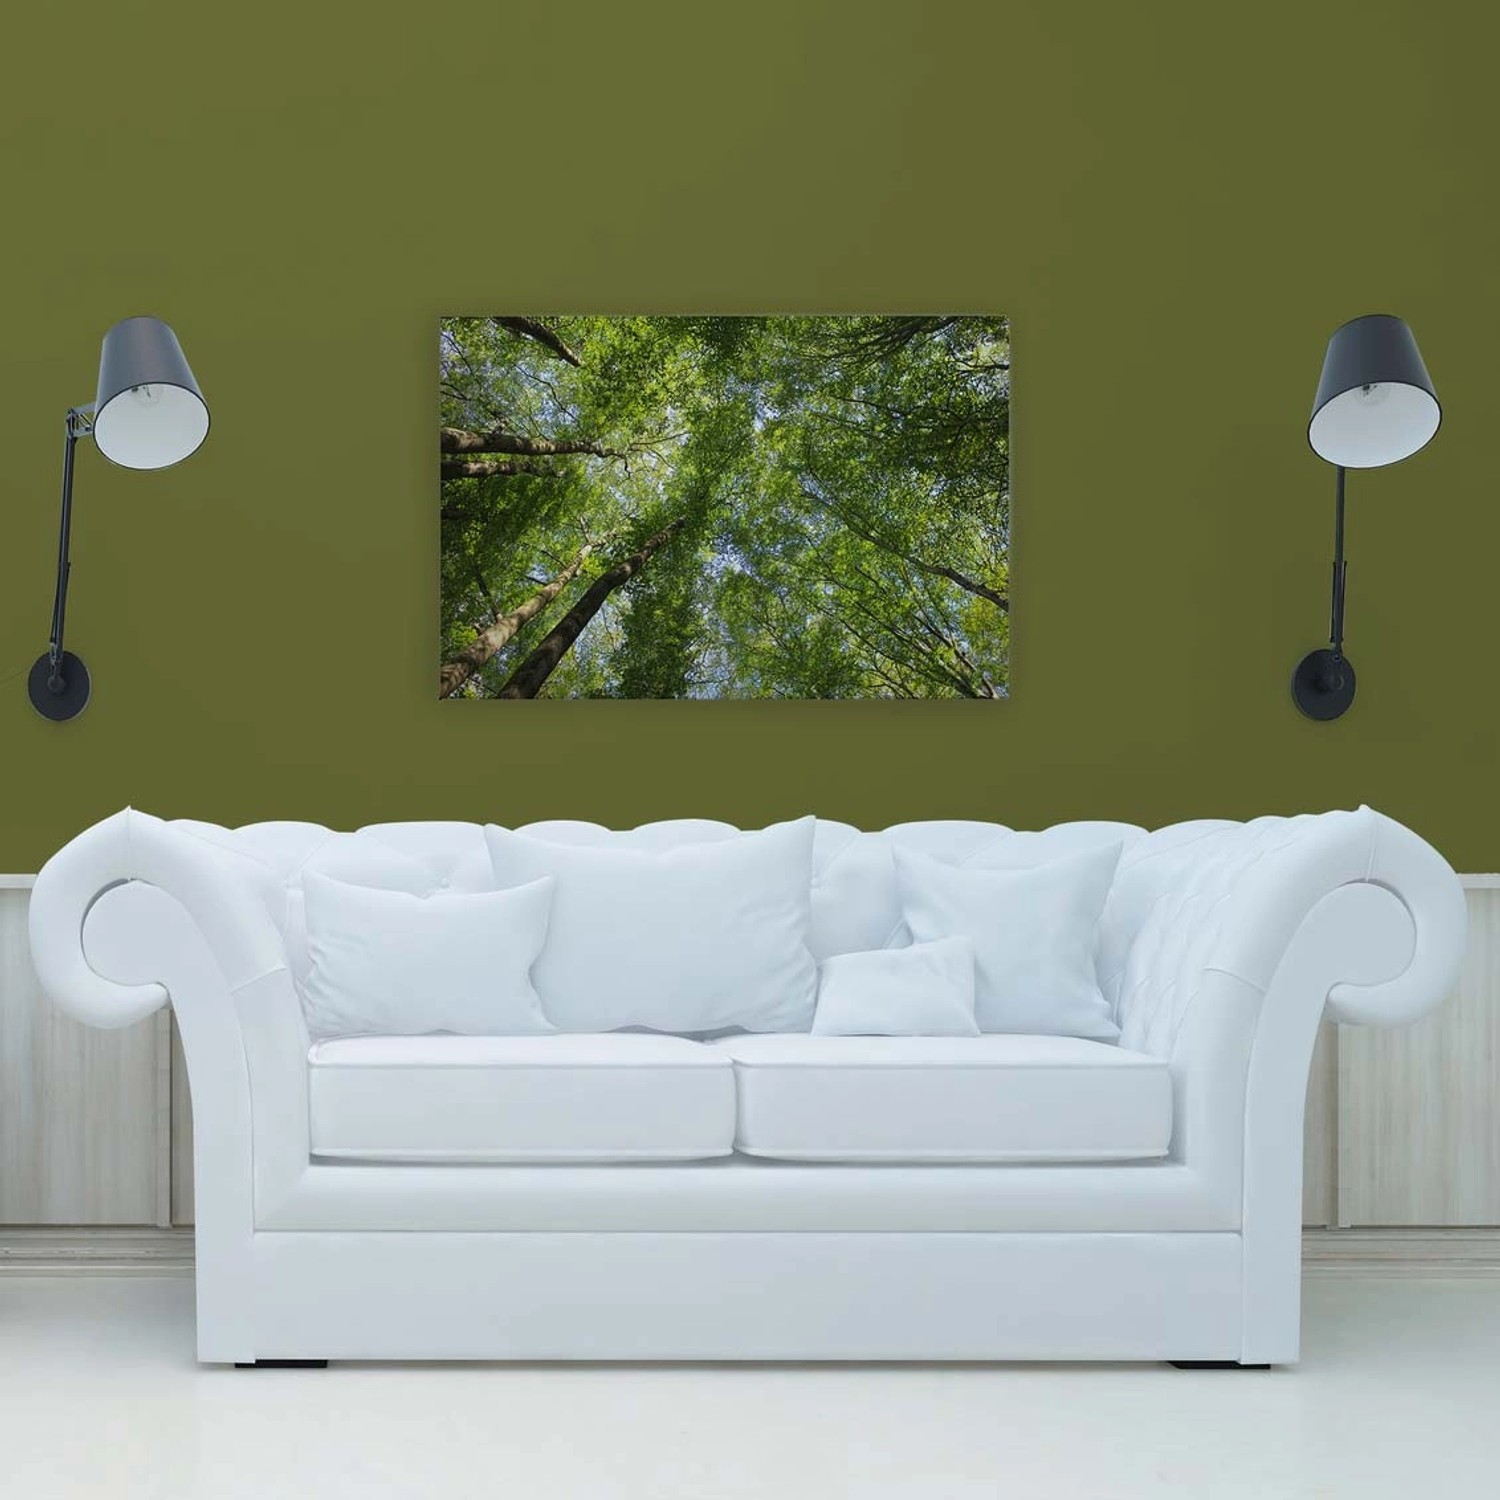 Bricoflor Baumkronen Bild Grün Leinwandbild Für Schlafzimmer Und Büro Deko Wandbild In 90 X 60 Cm Mit Wald Motiv